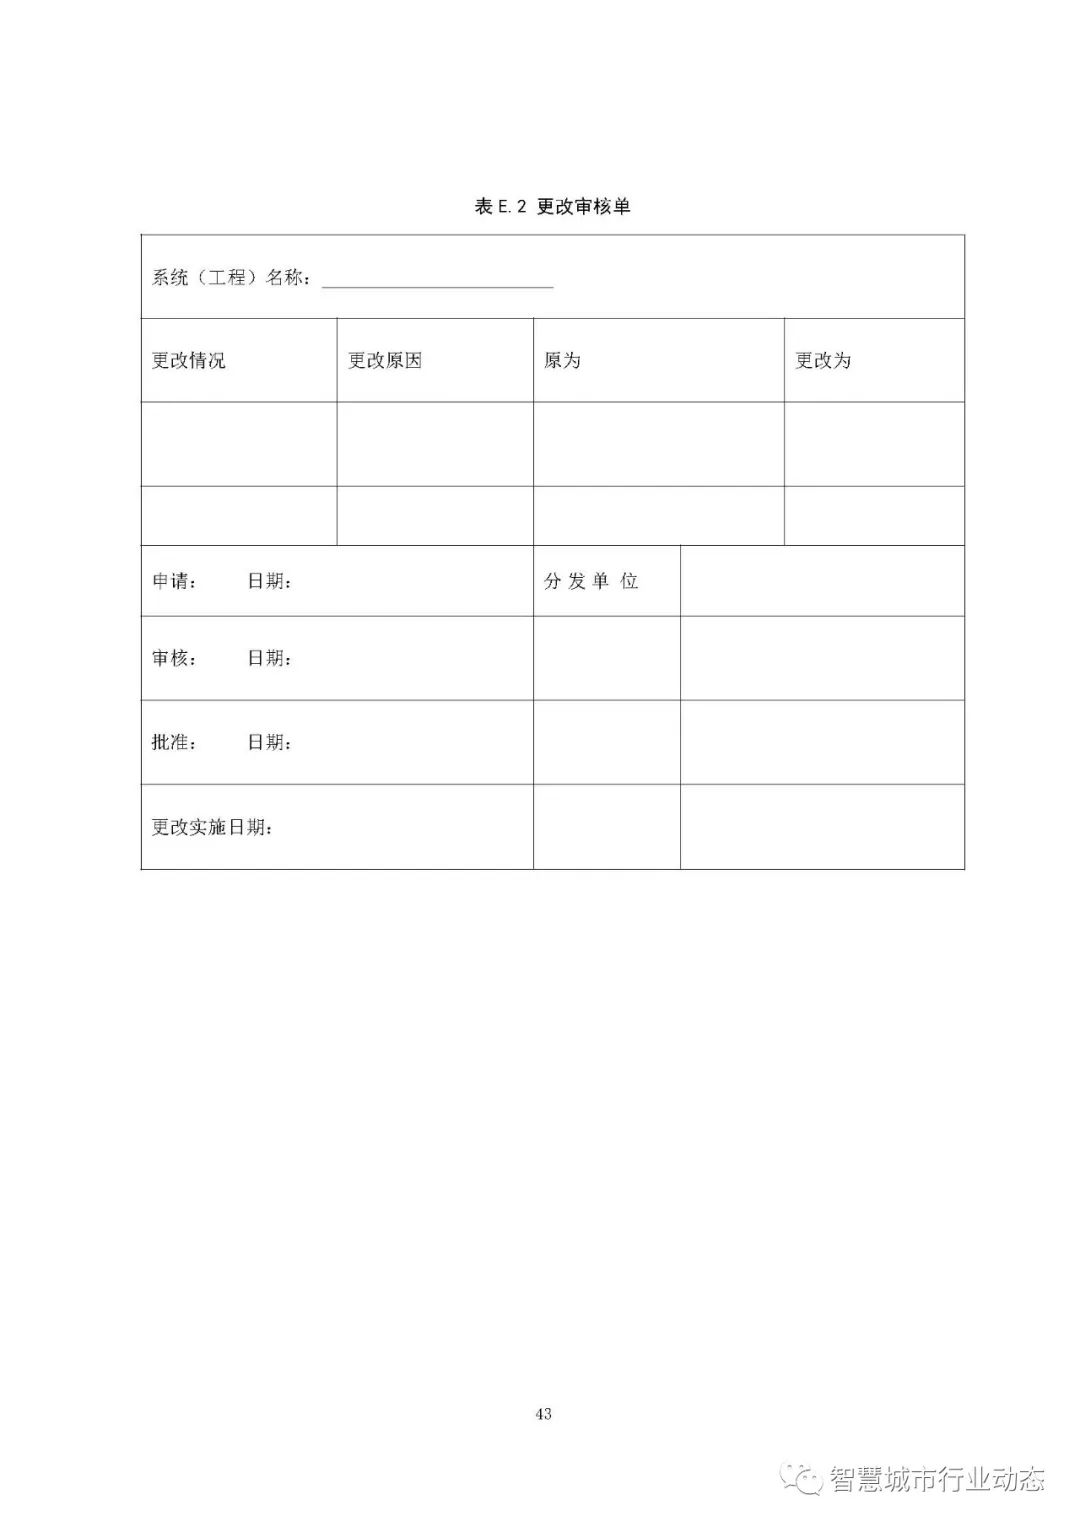 江西省发布智慧杆建设技术标准（意见稿全文）